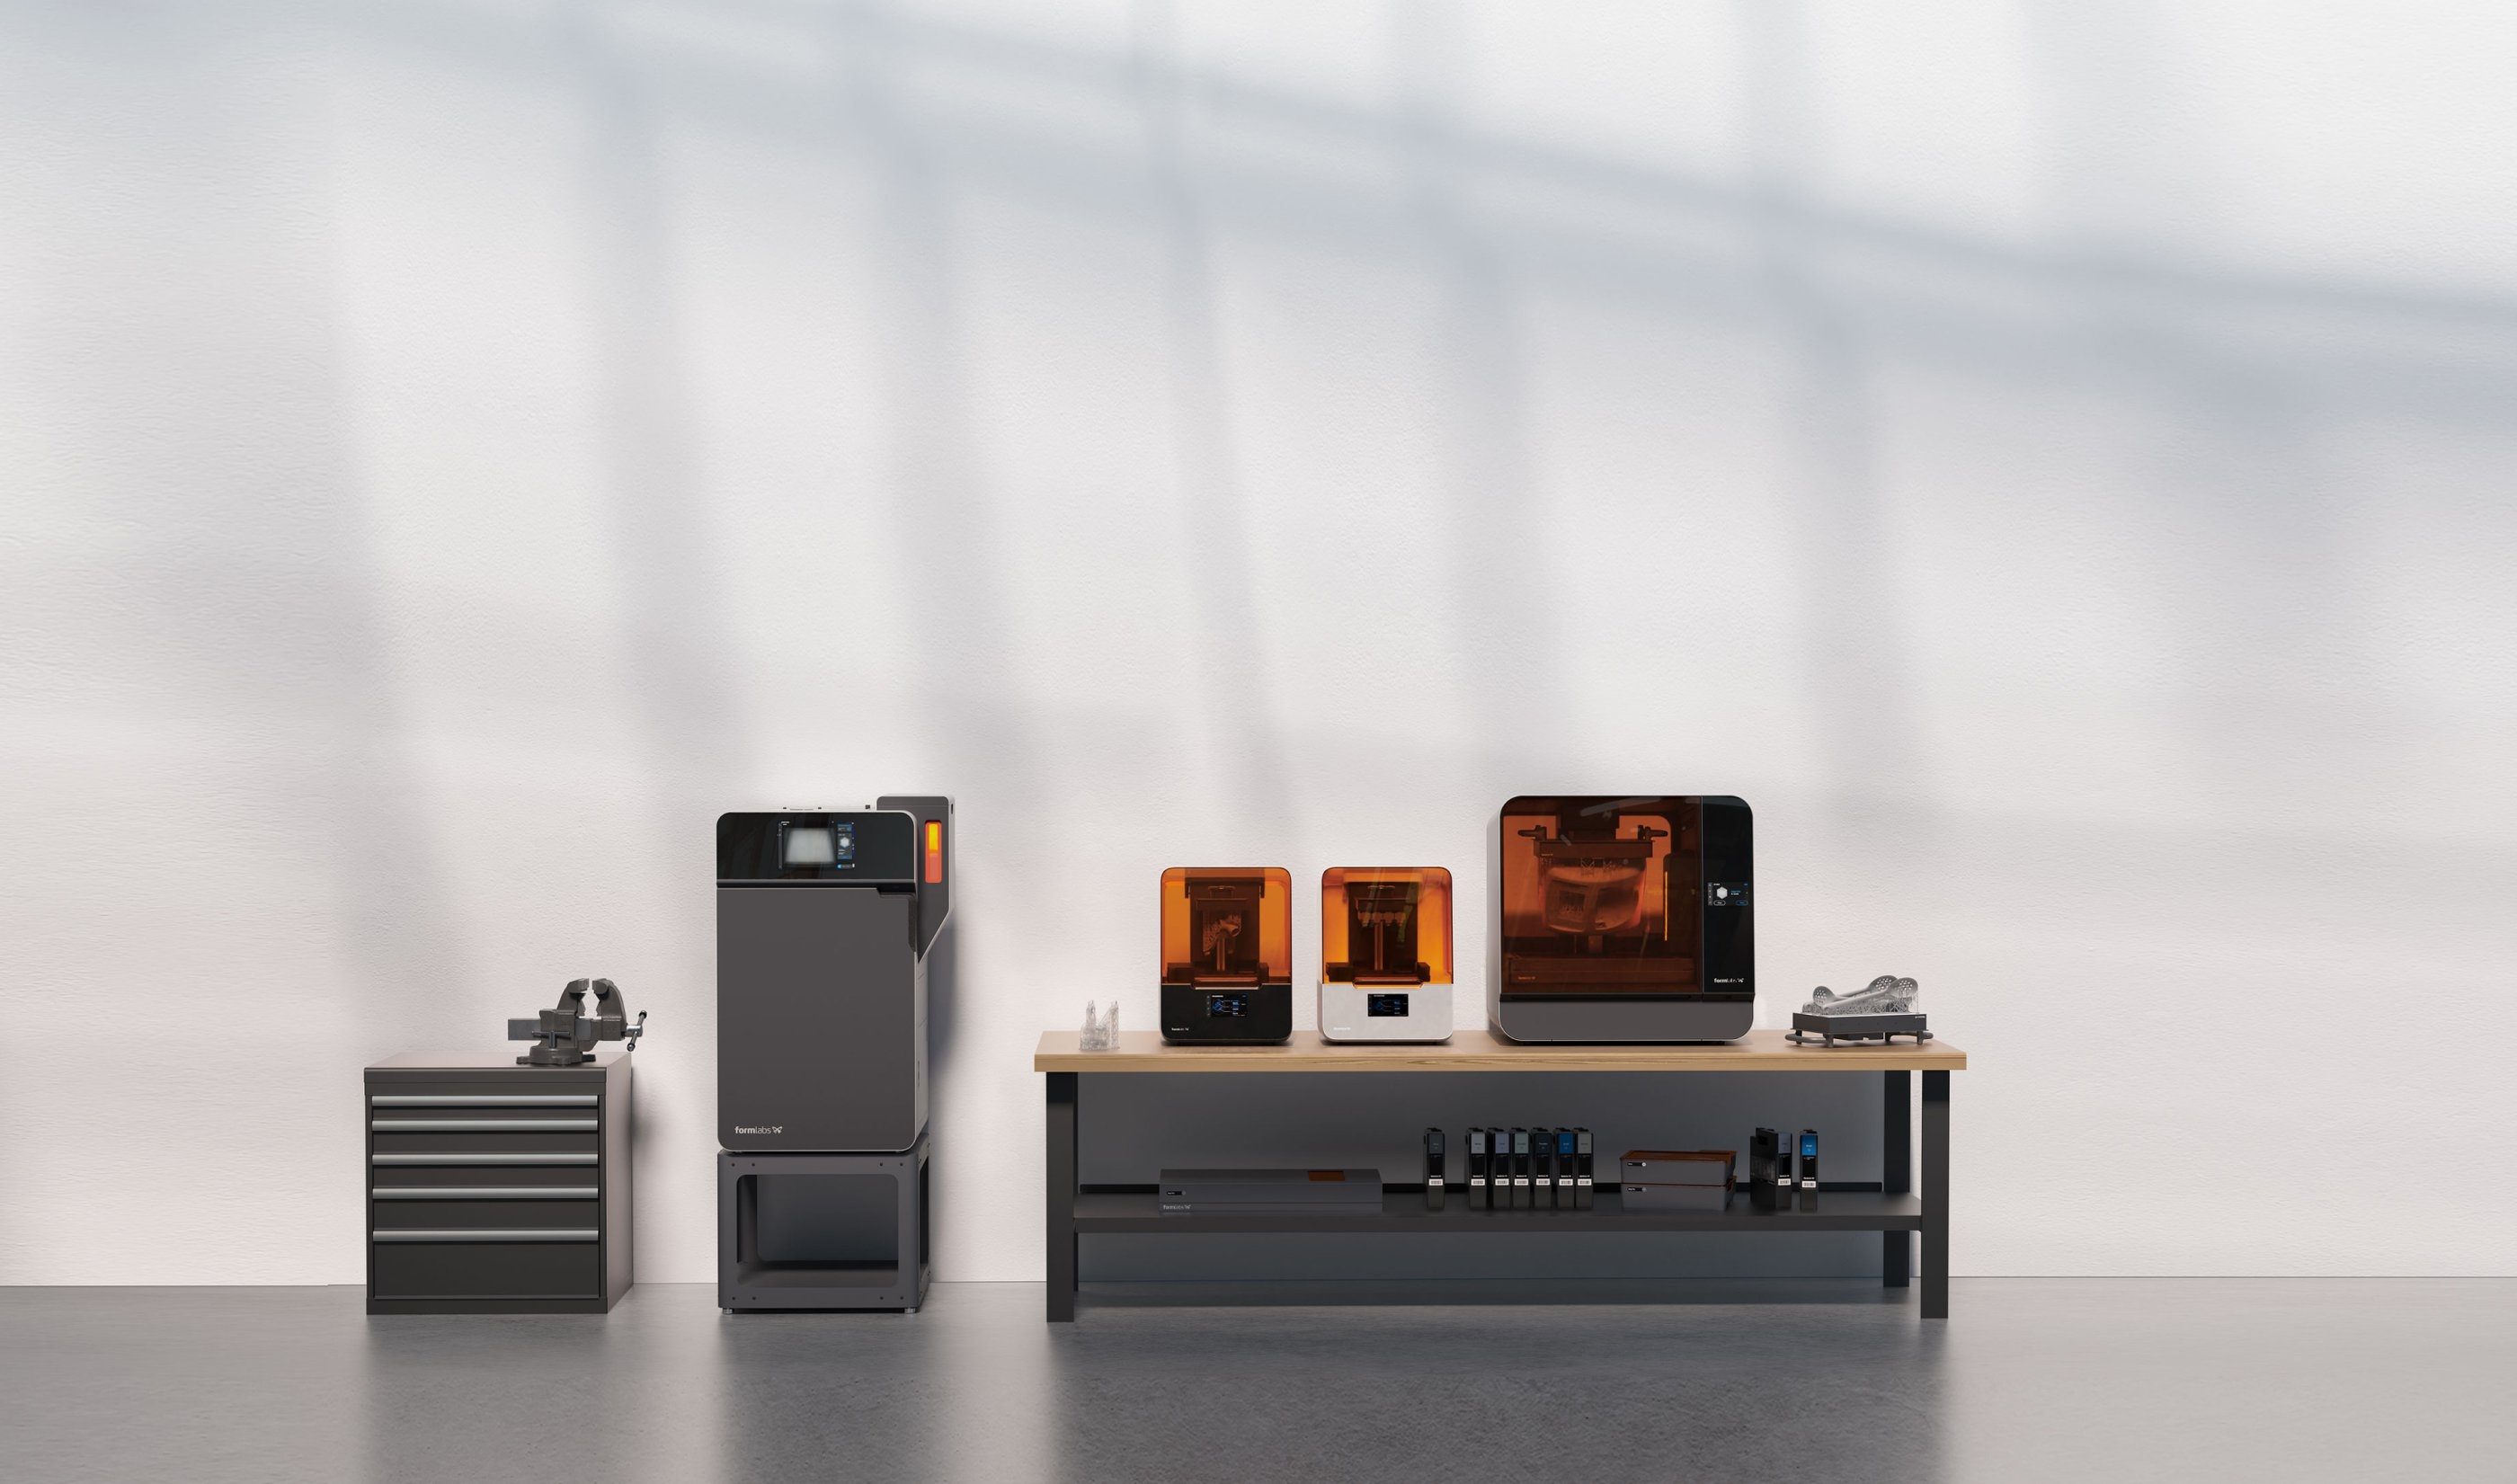 Formlabs 3D printers